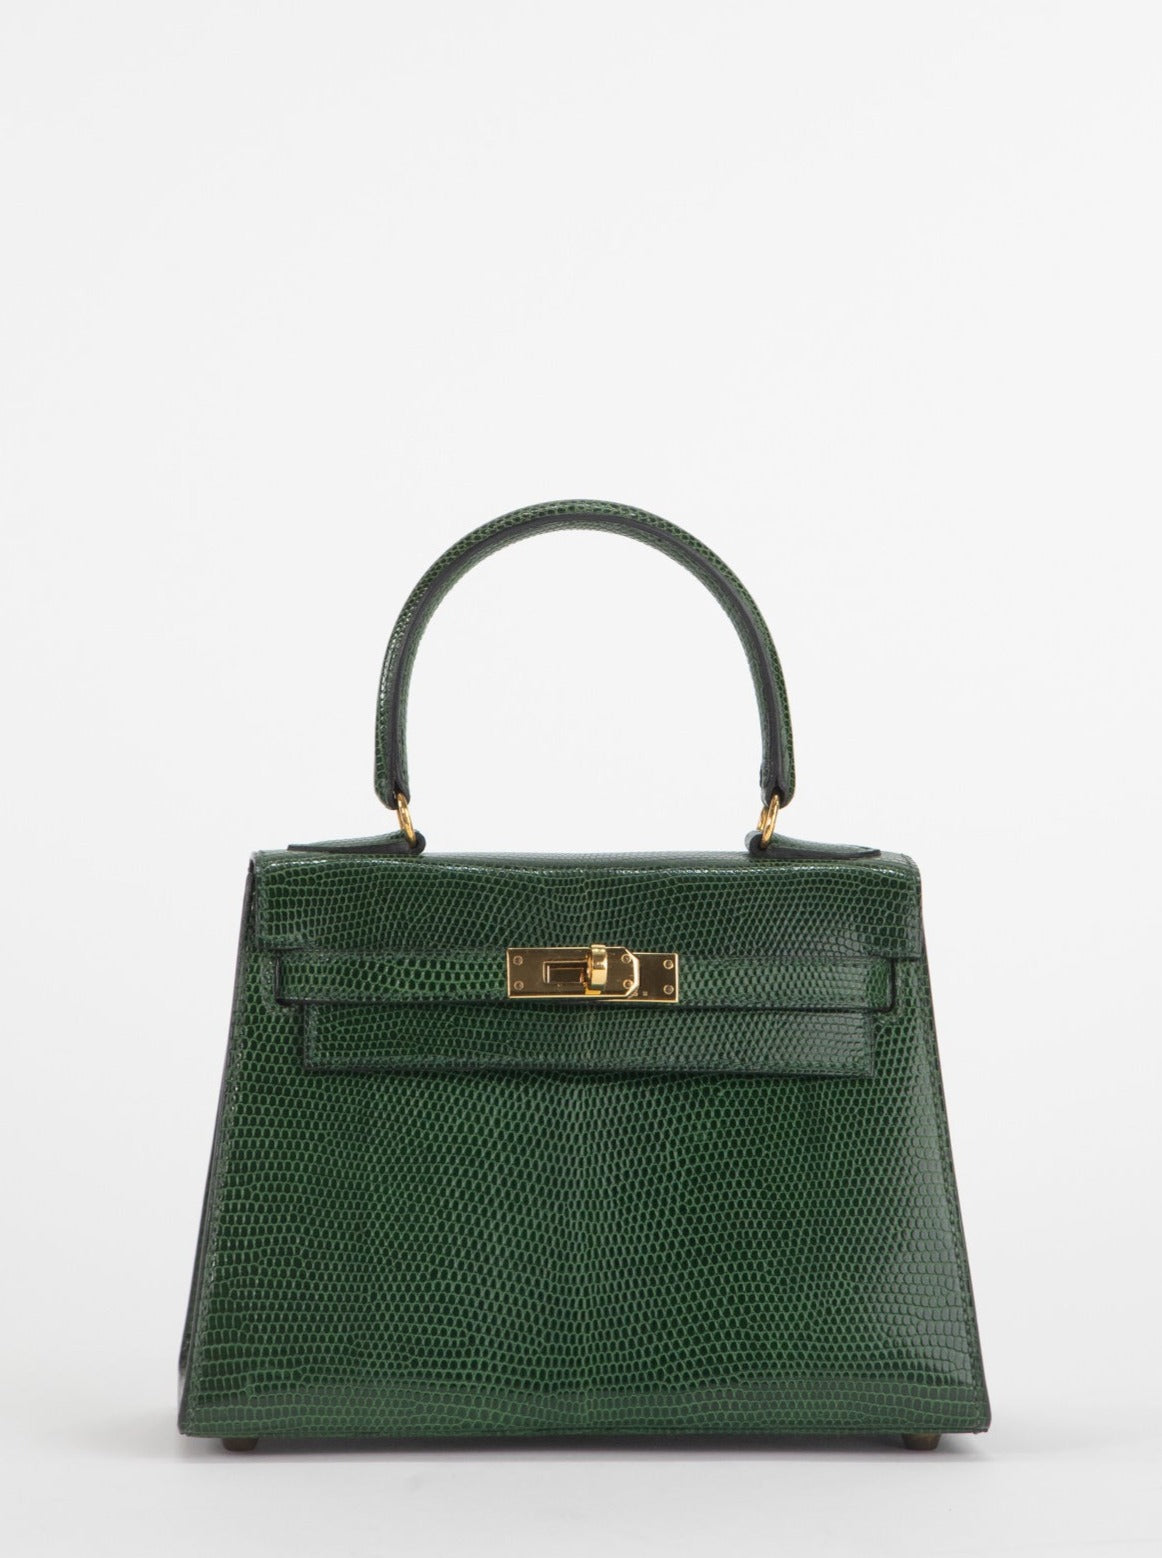 Mini Kelly lizard designer bag#hermesbag #hermes #hermesminikelly #her